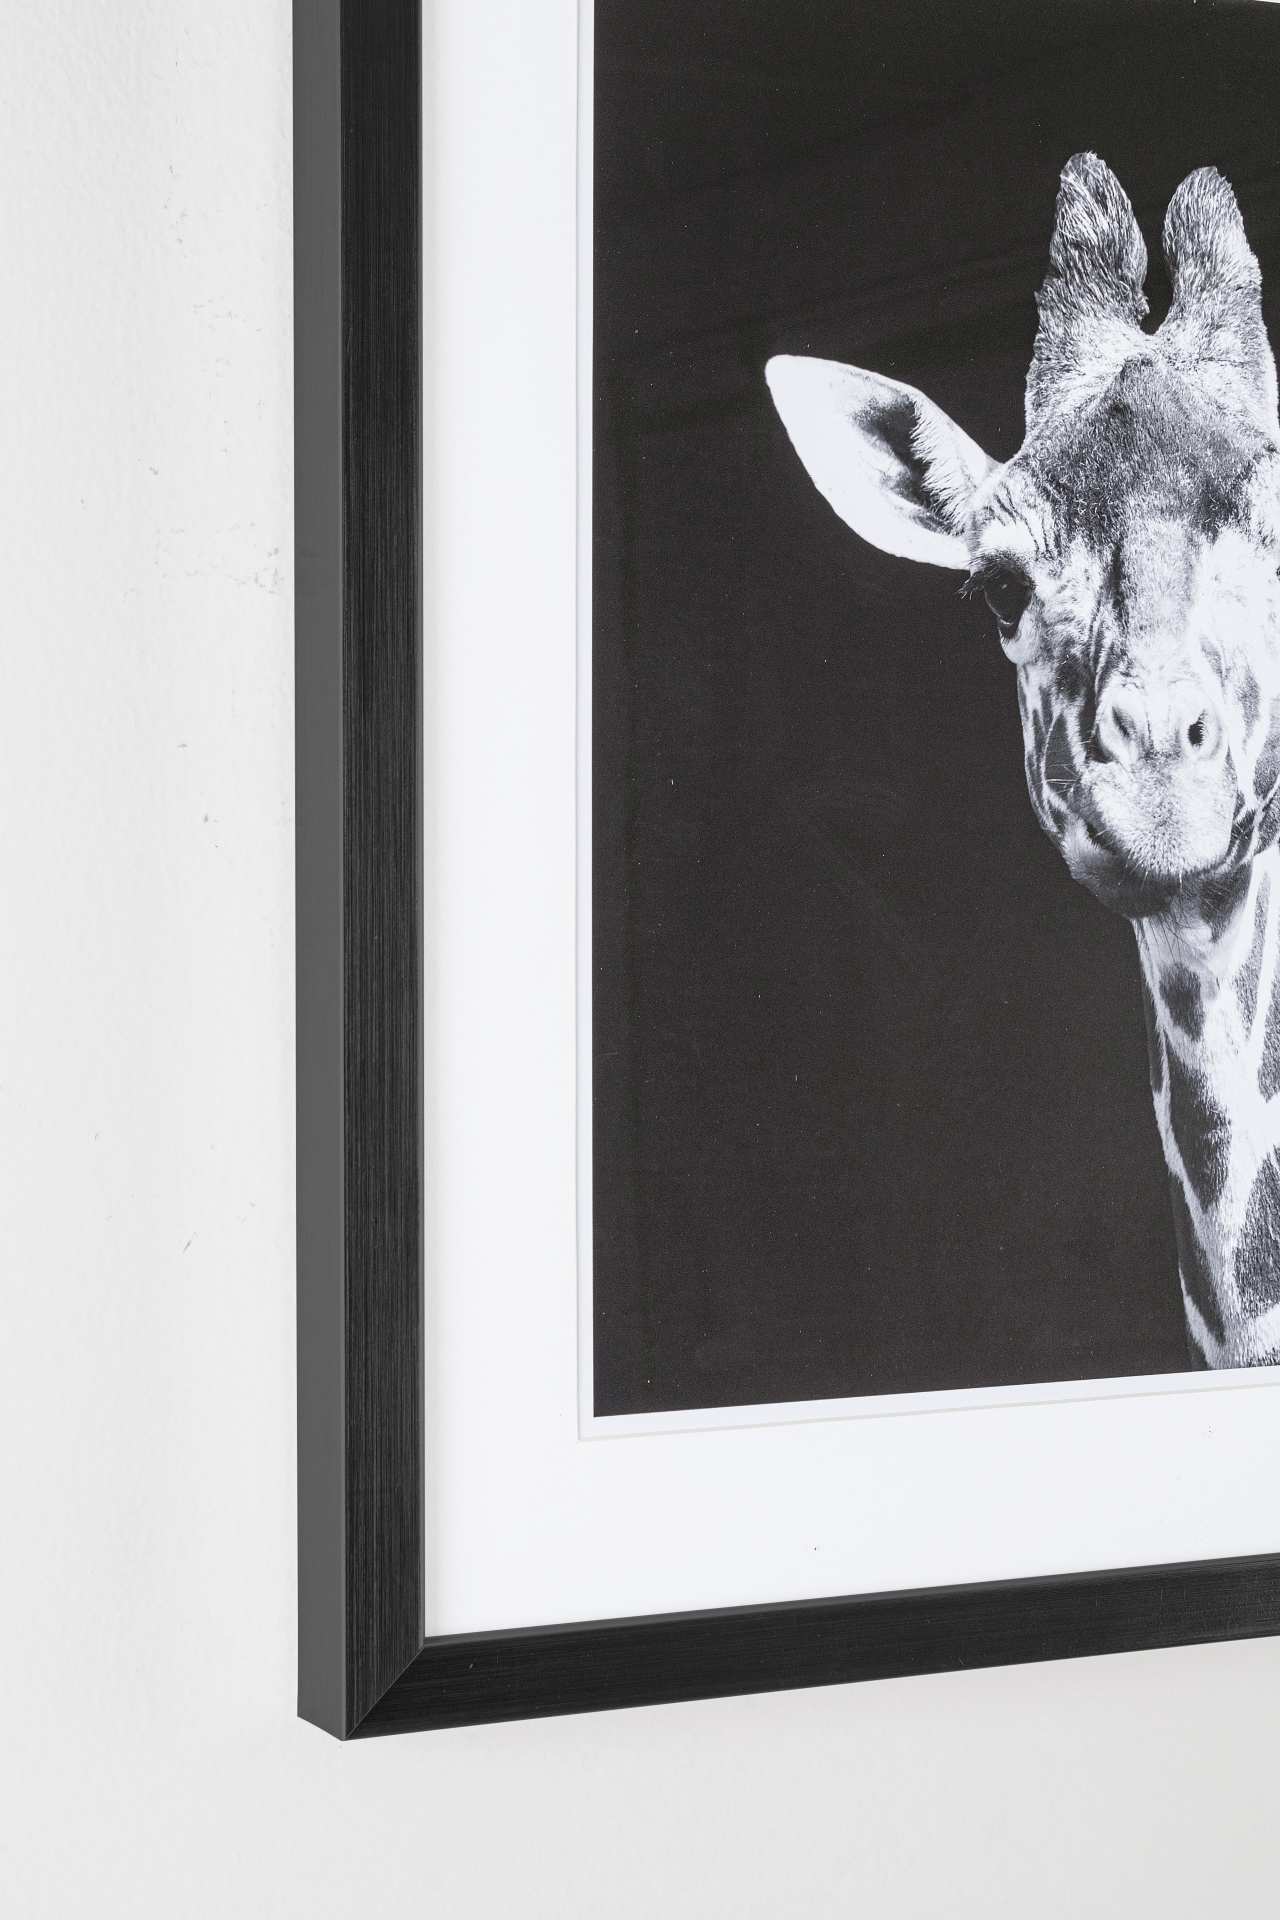 Das Bild Giraffe überzeugt mit ihrem klassischen Design. Das Bild verfügt über einen Druck auf Papier. Das Gestell ist aus MDF und der Rahmen aus Kunststoff. Die Maße sind 50x50 cm.